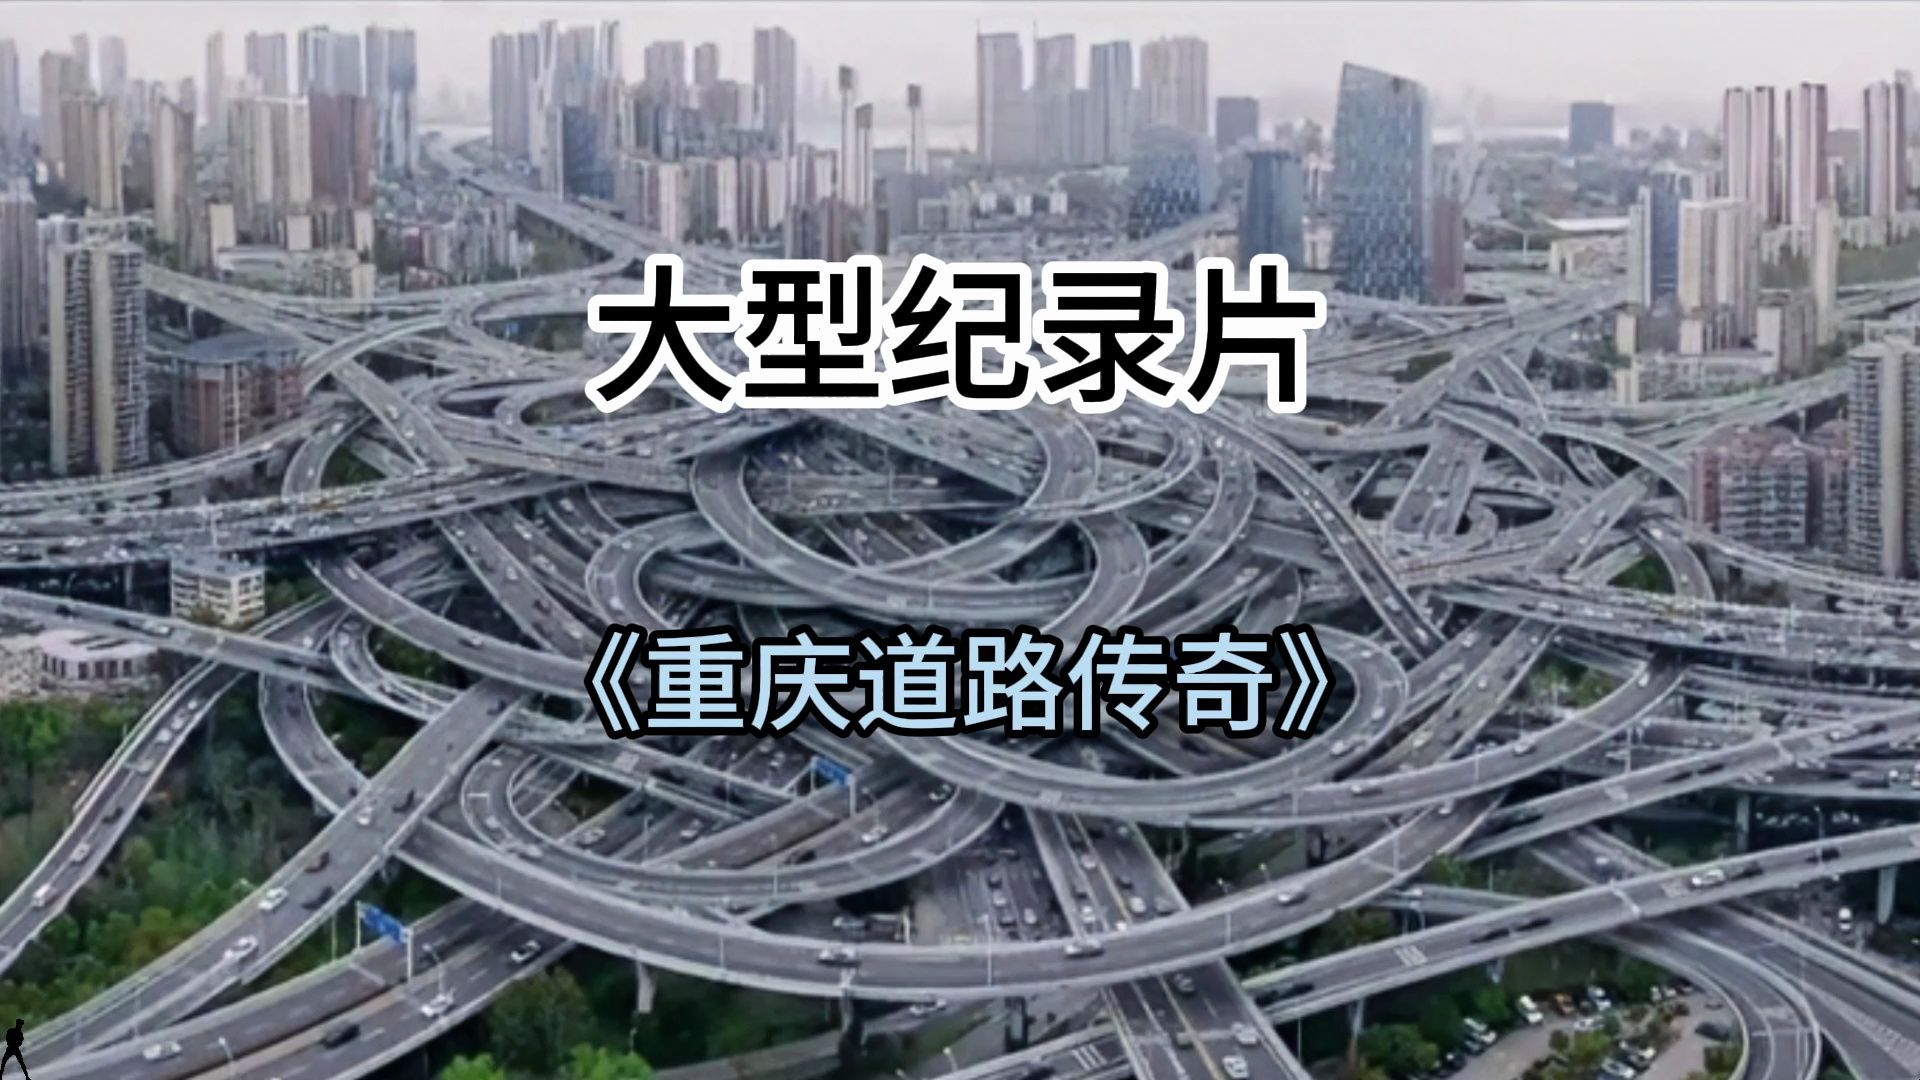 大型纪录片《重庆道路传奇》持续为您播出